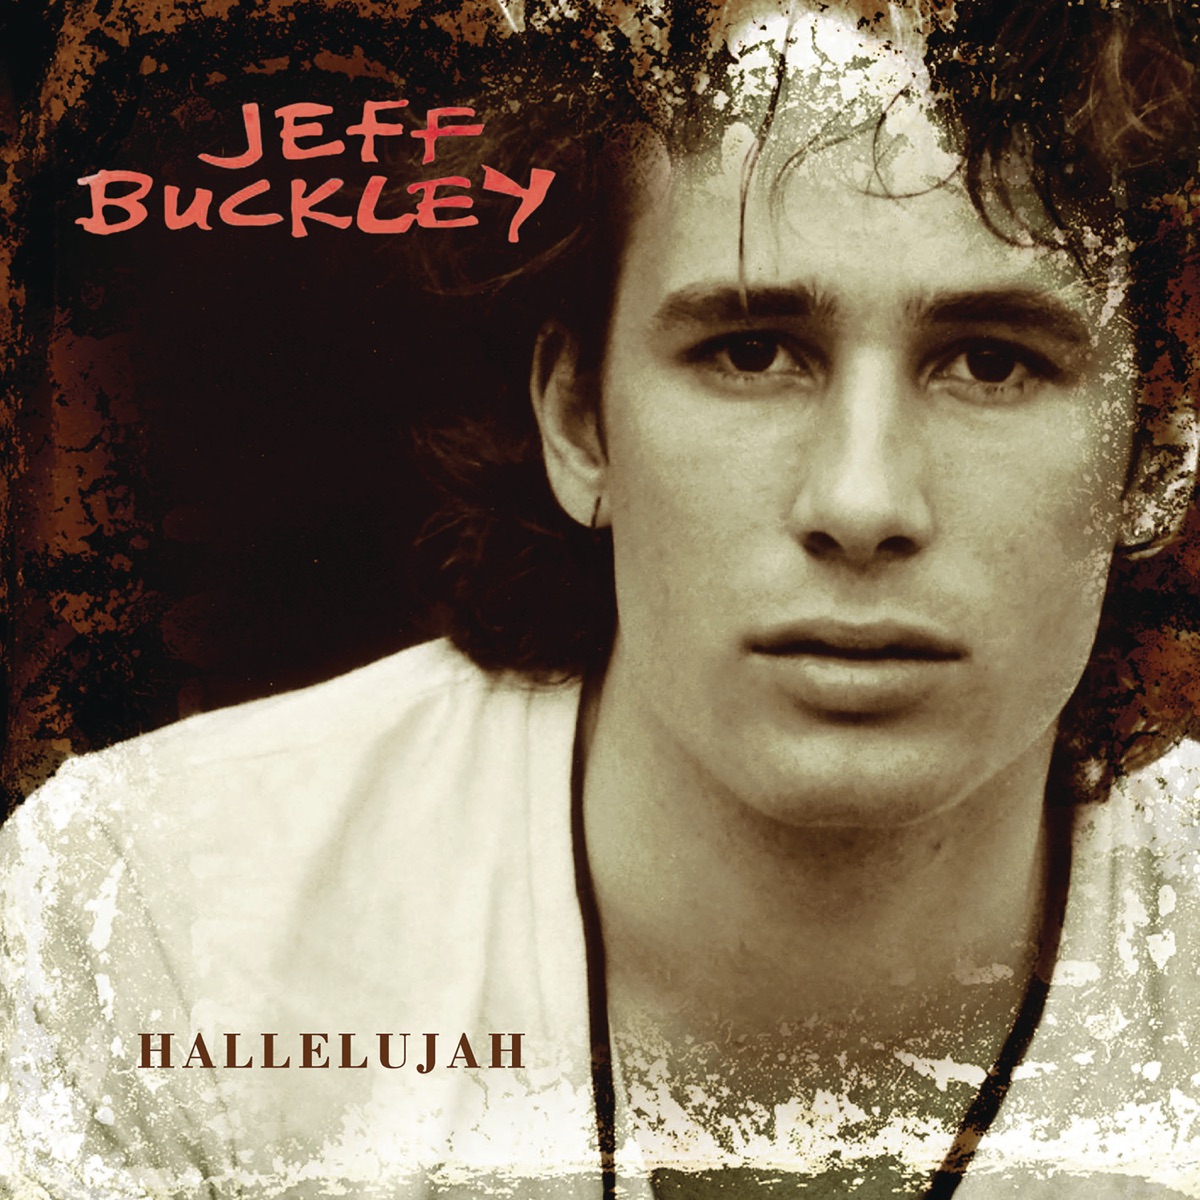 Jeff Buckley — Hallelujah cover artwork